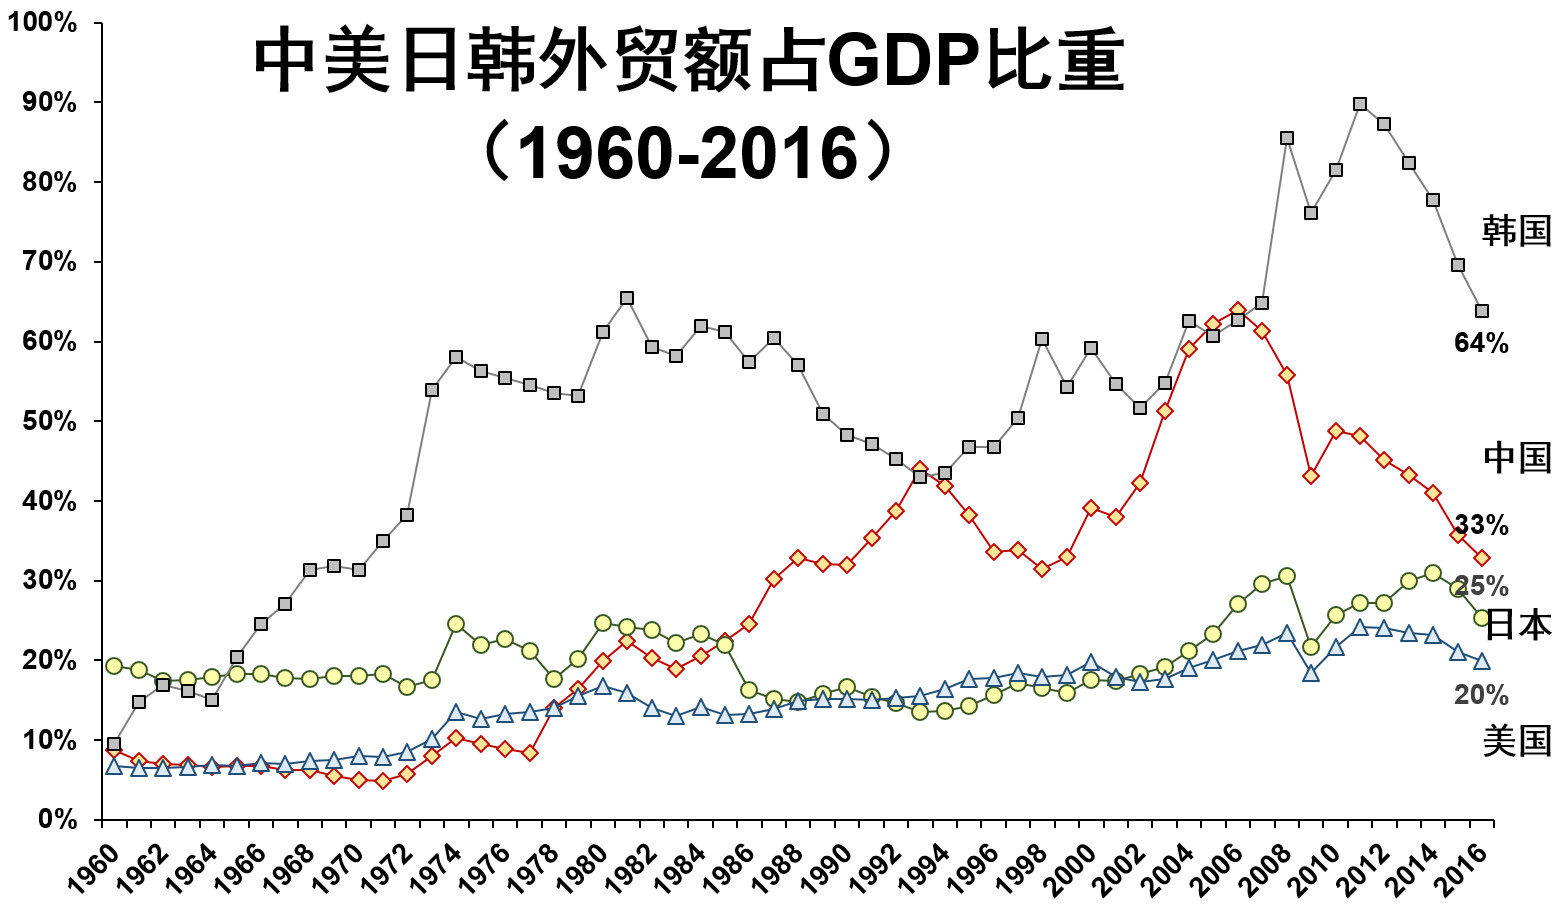 中国改革开放前,外贸占gdp比重不到10%,2007年达到顶峰接近70%,如今